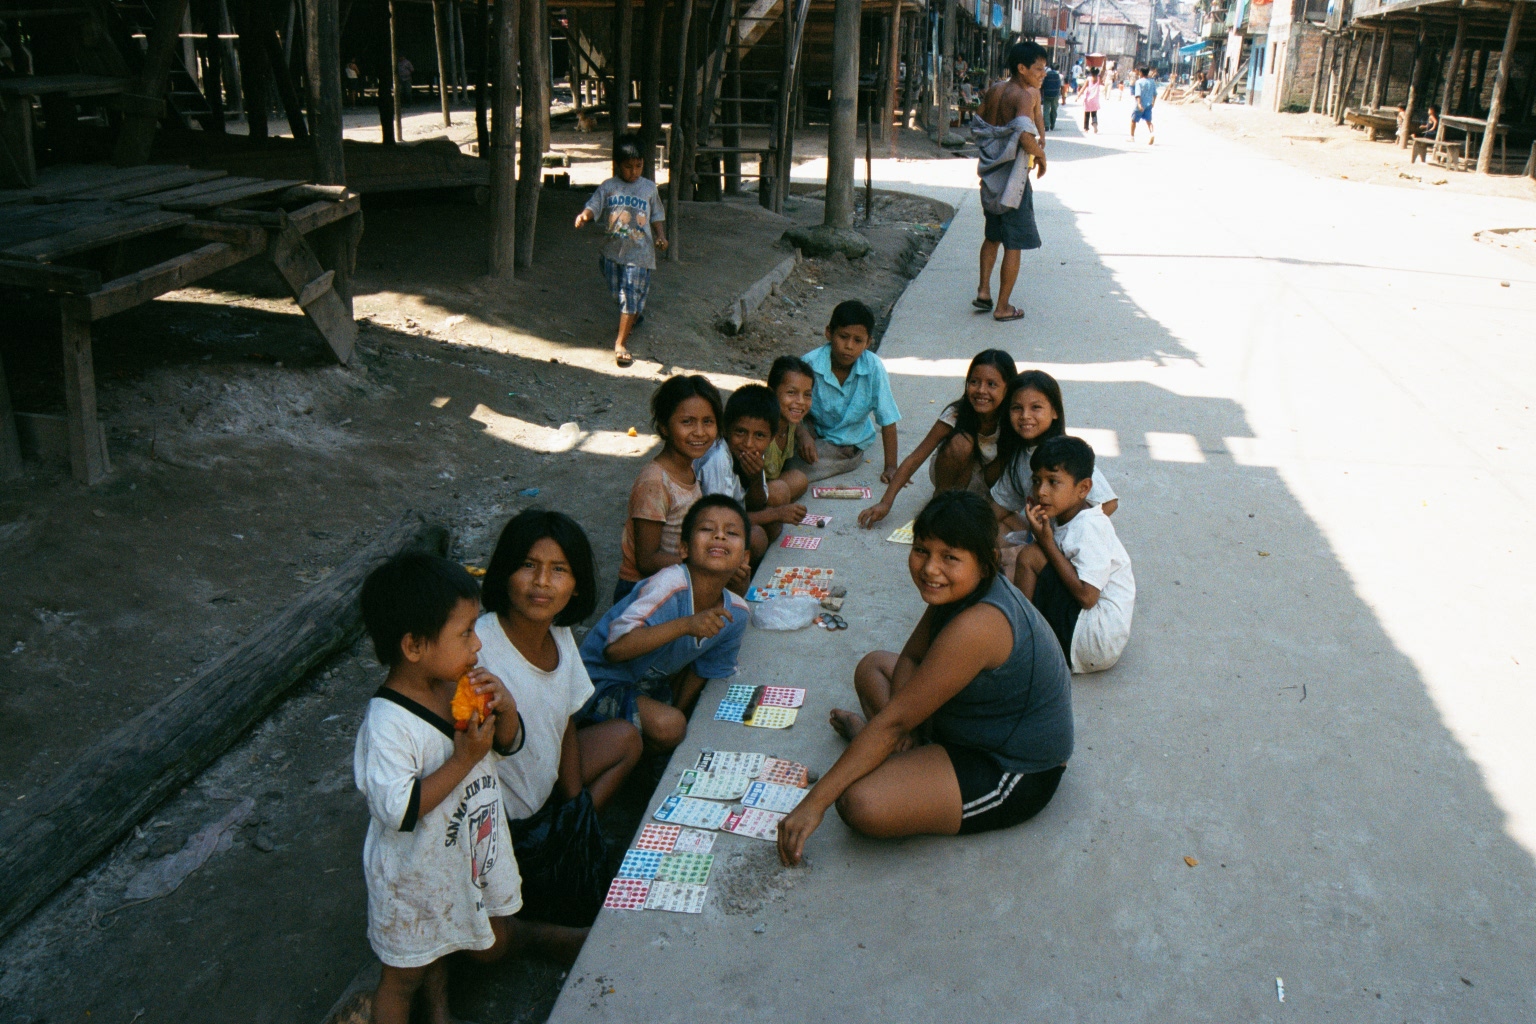 Kids in Iquitos, Peru - Feb 2002